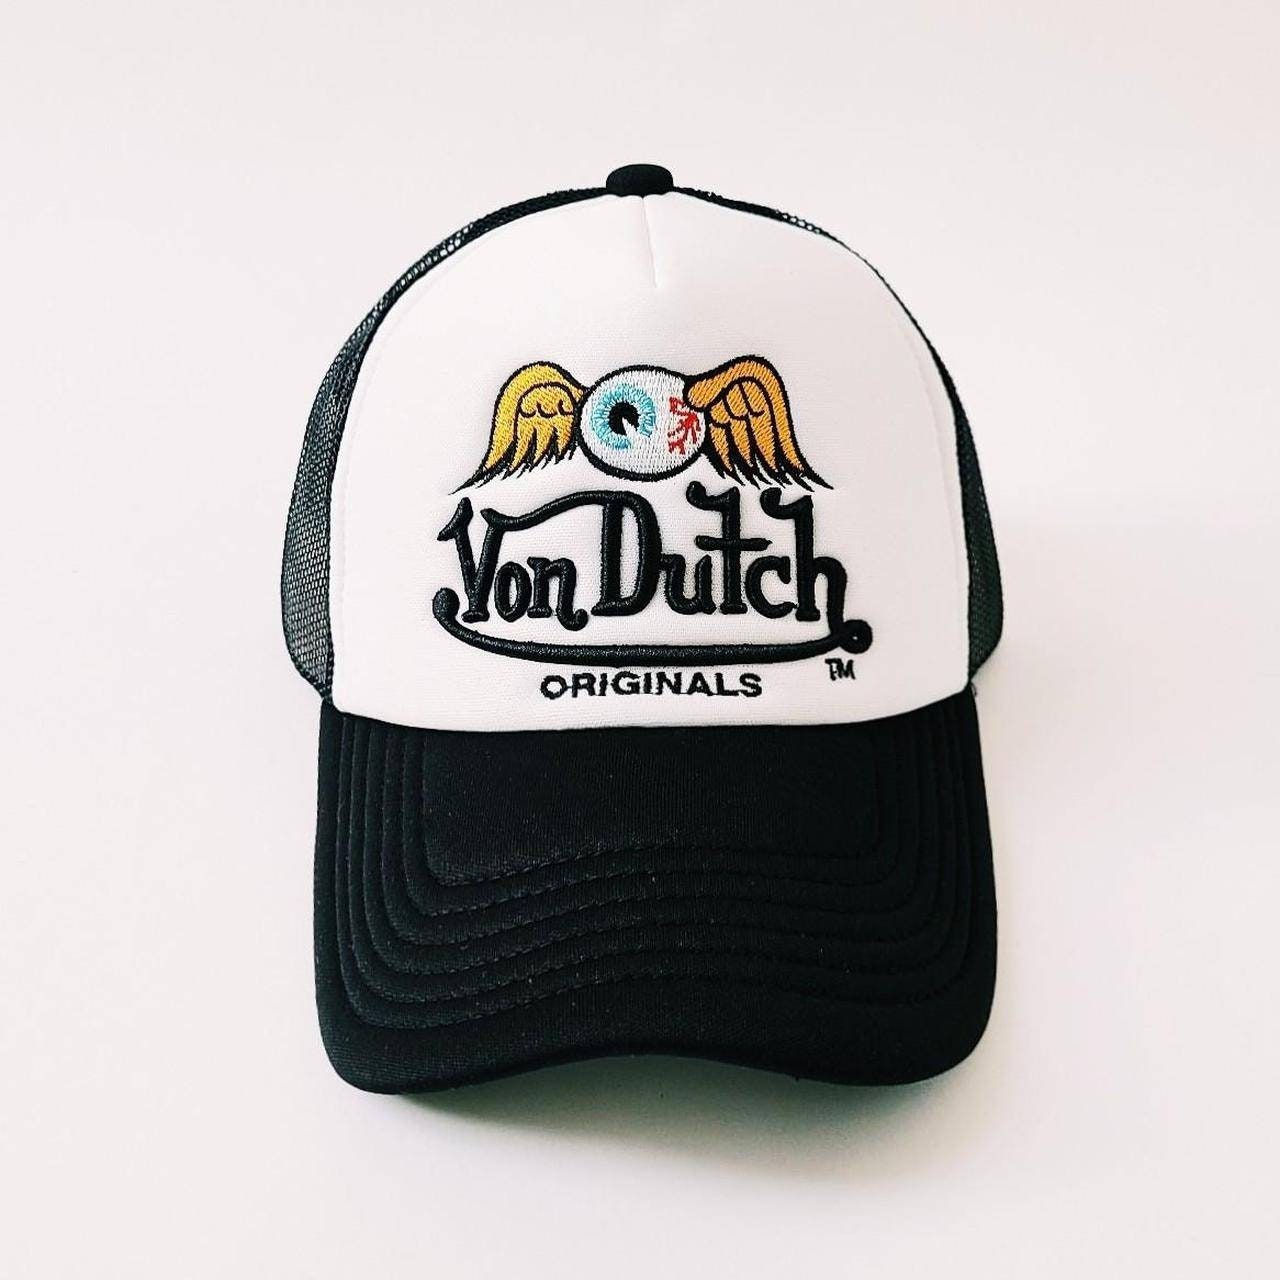 Von Dutch